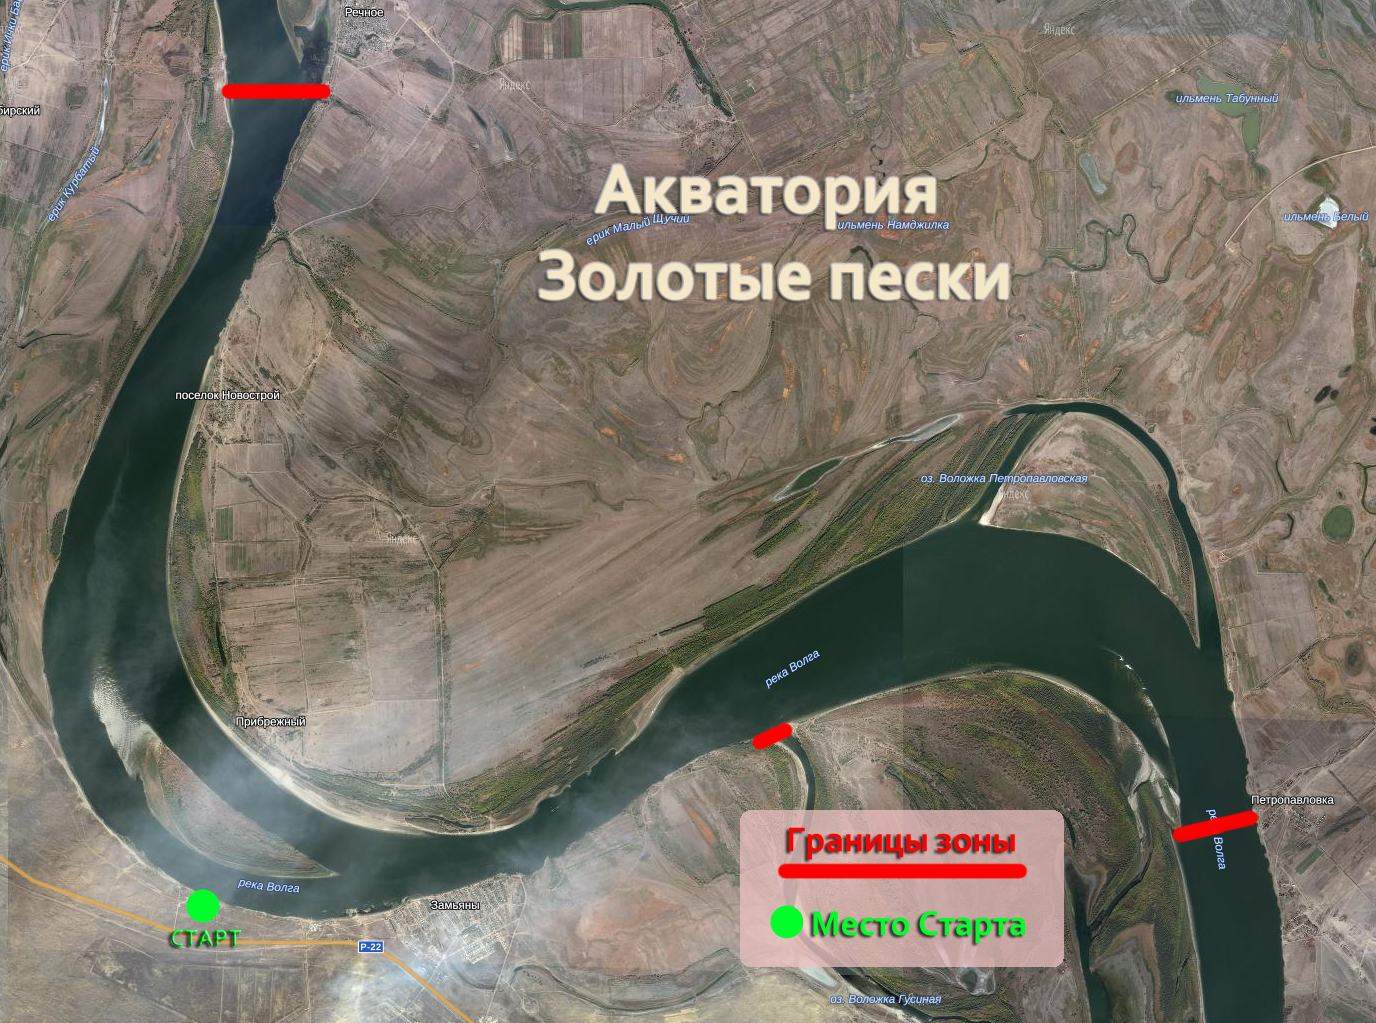 Схема акватории ловли чемпионата России по спиннингу 2015